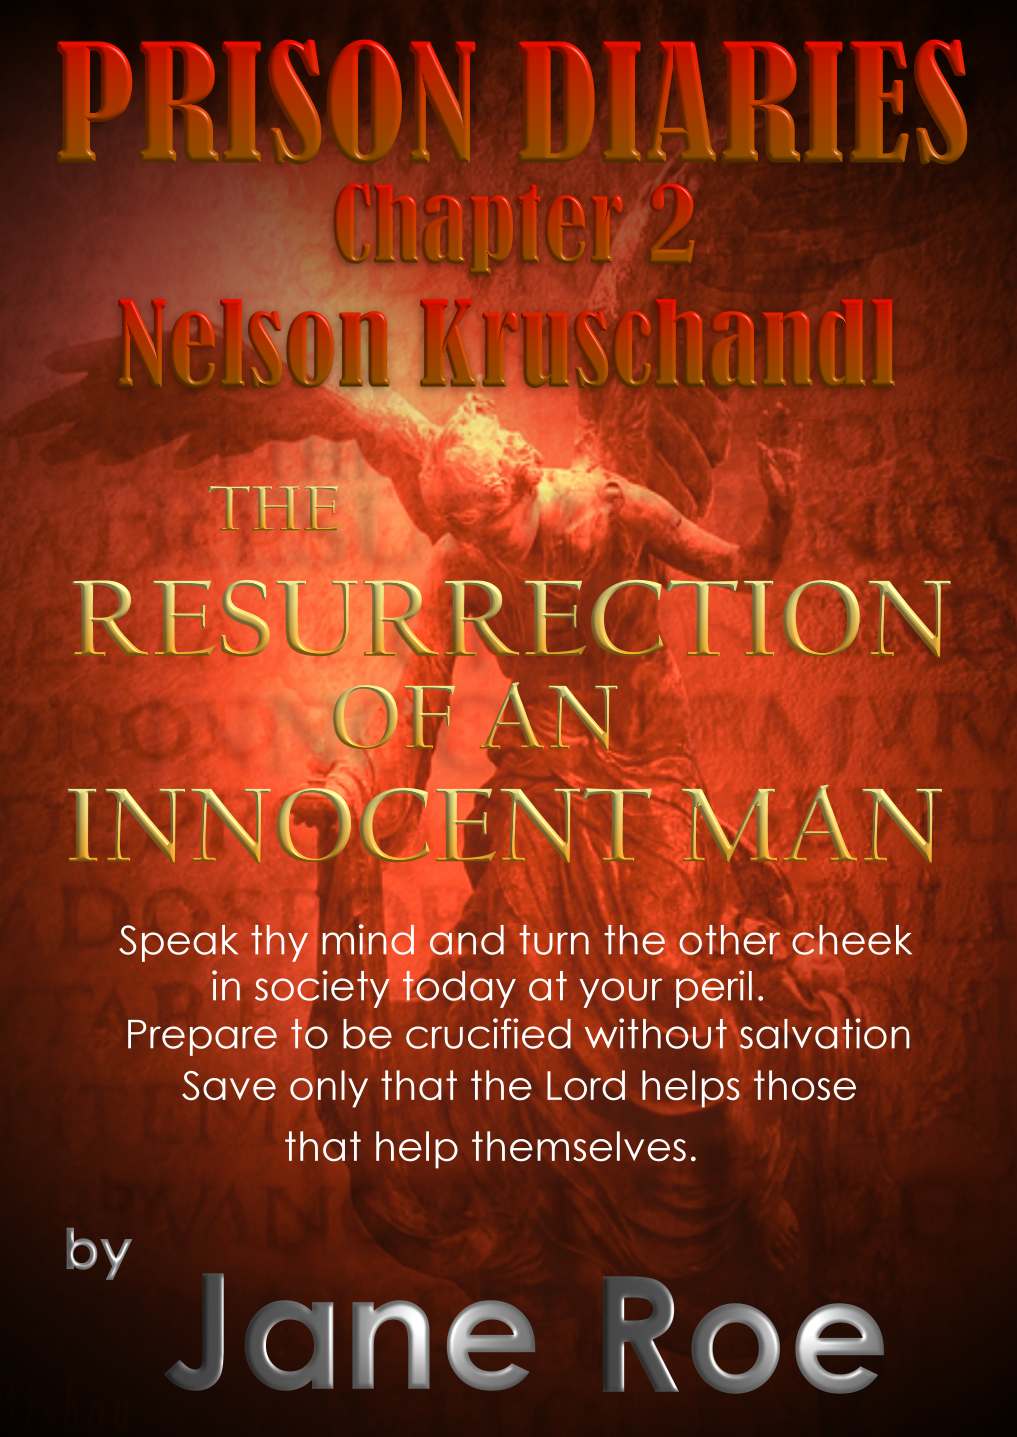 Prison Diaries, Resurrection of an Innocent Man, Nelson Kruschandl